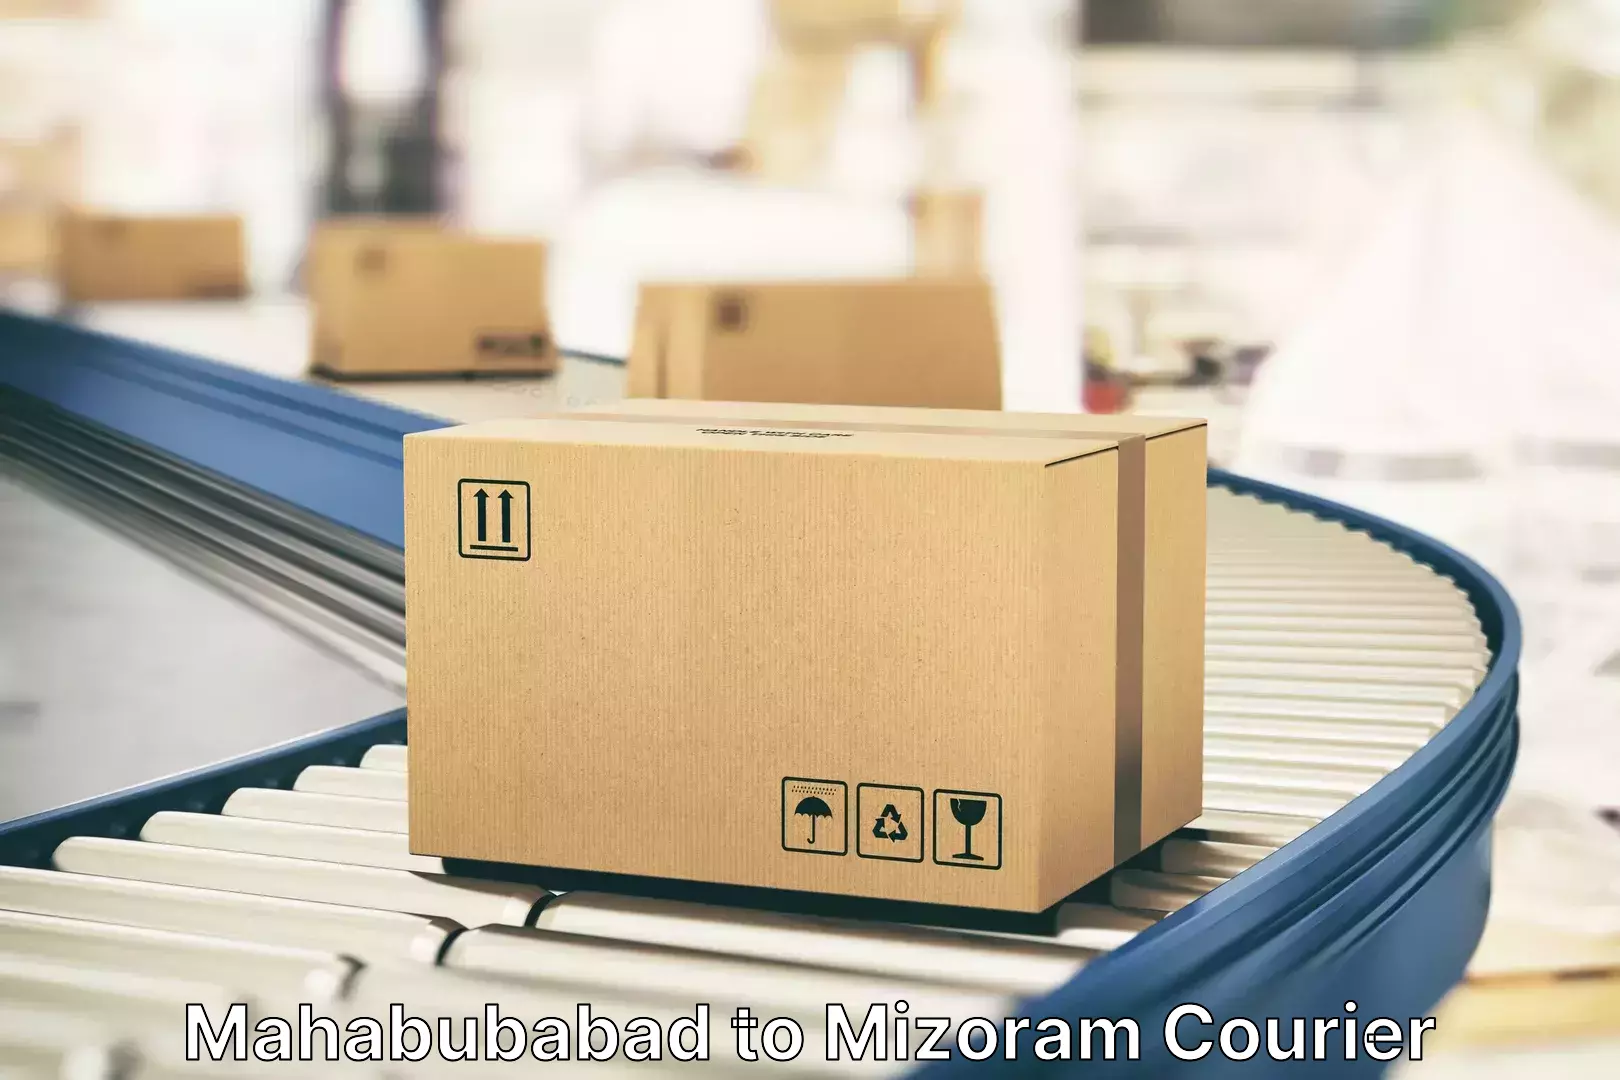 Luggage delivery optimization Mahabubabad to Mizoram